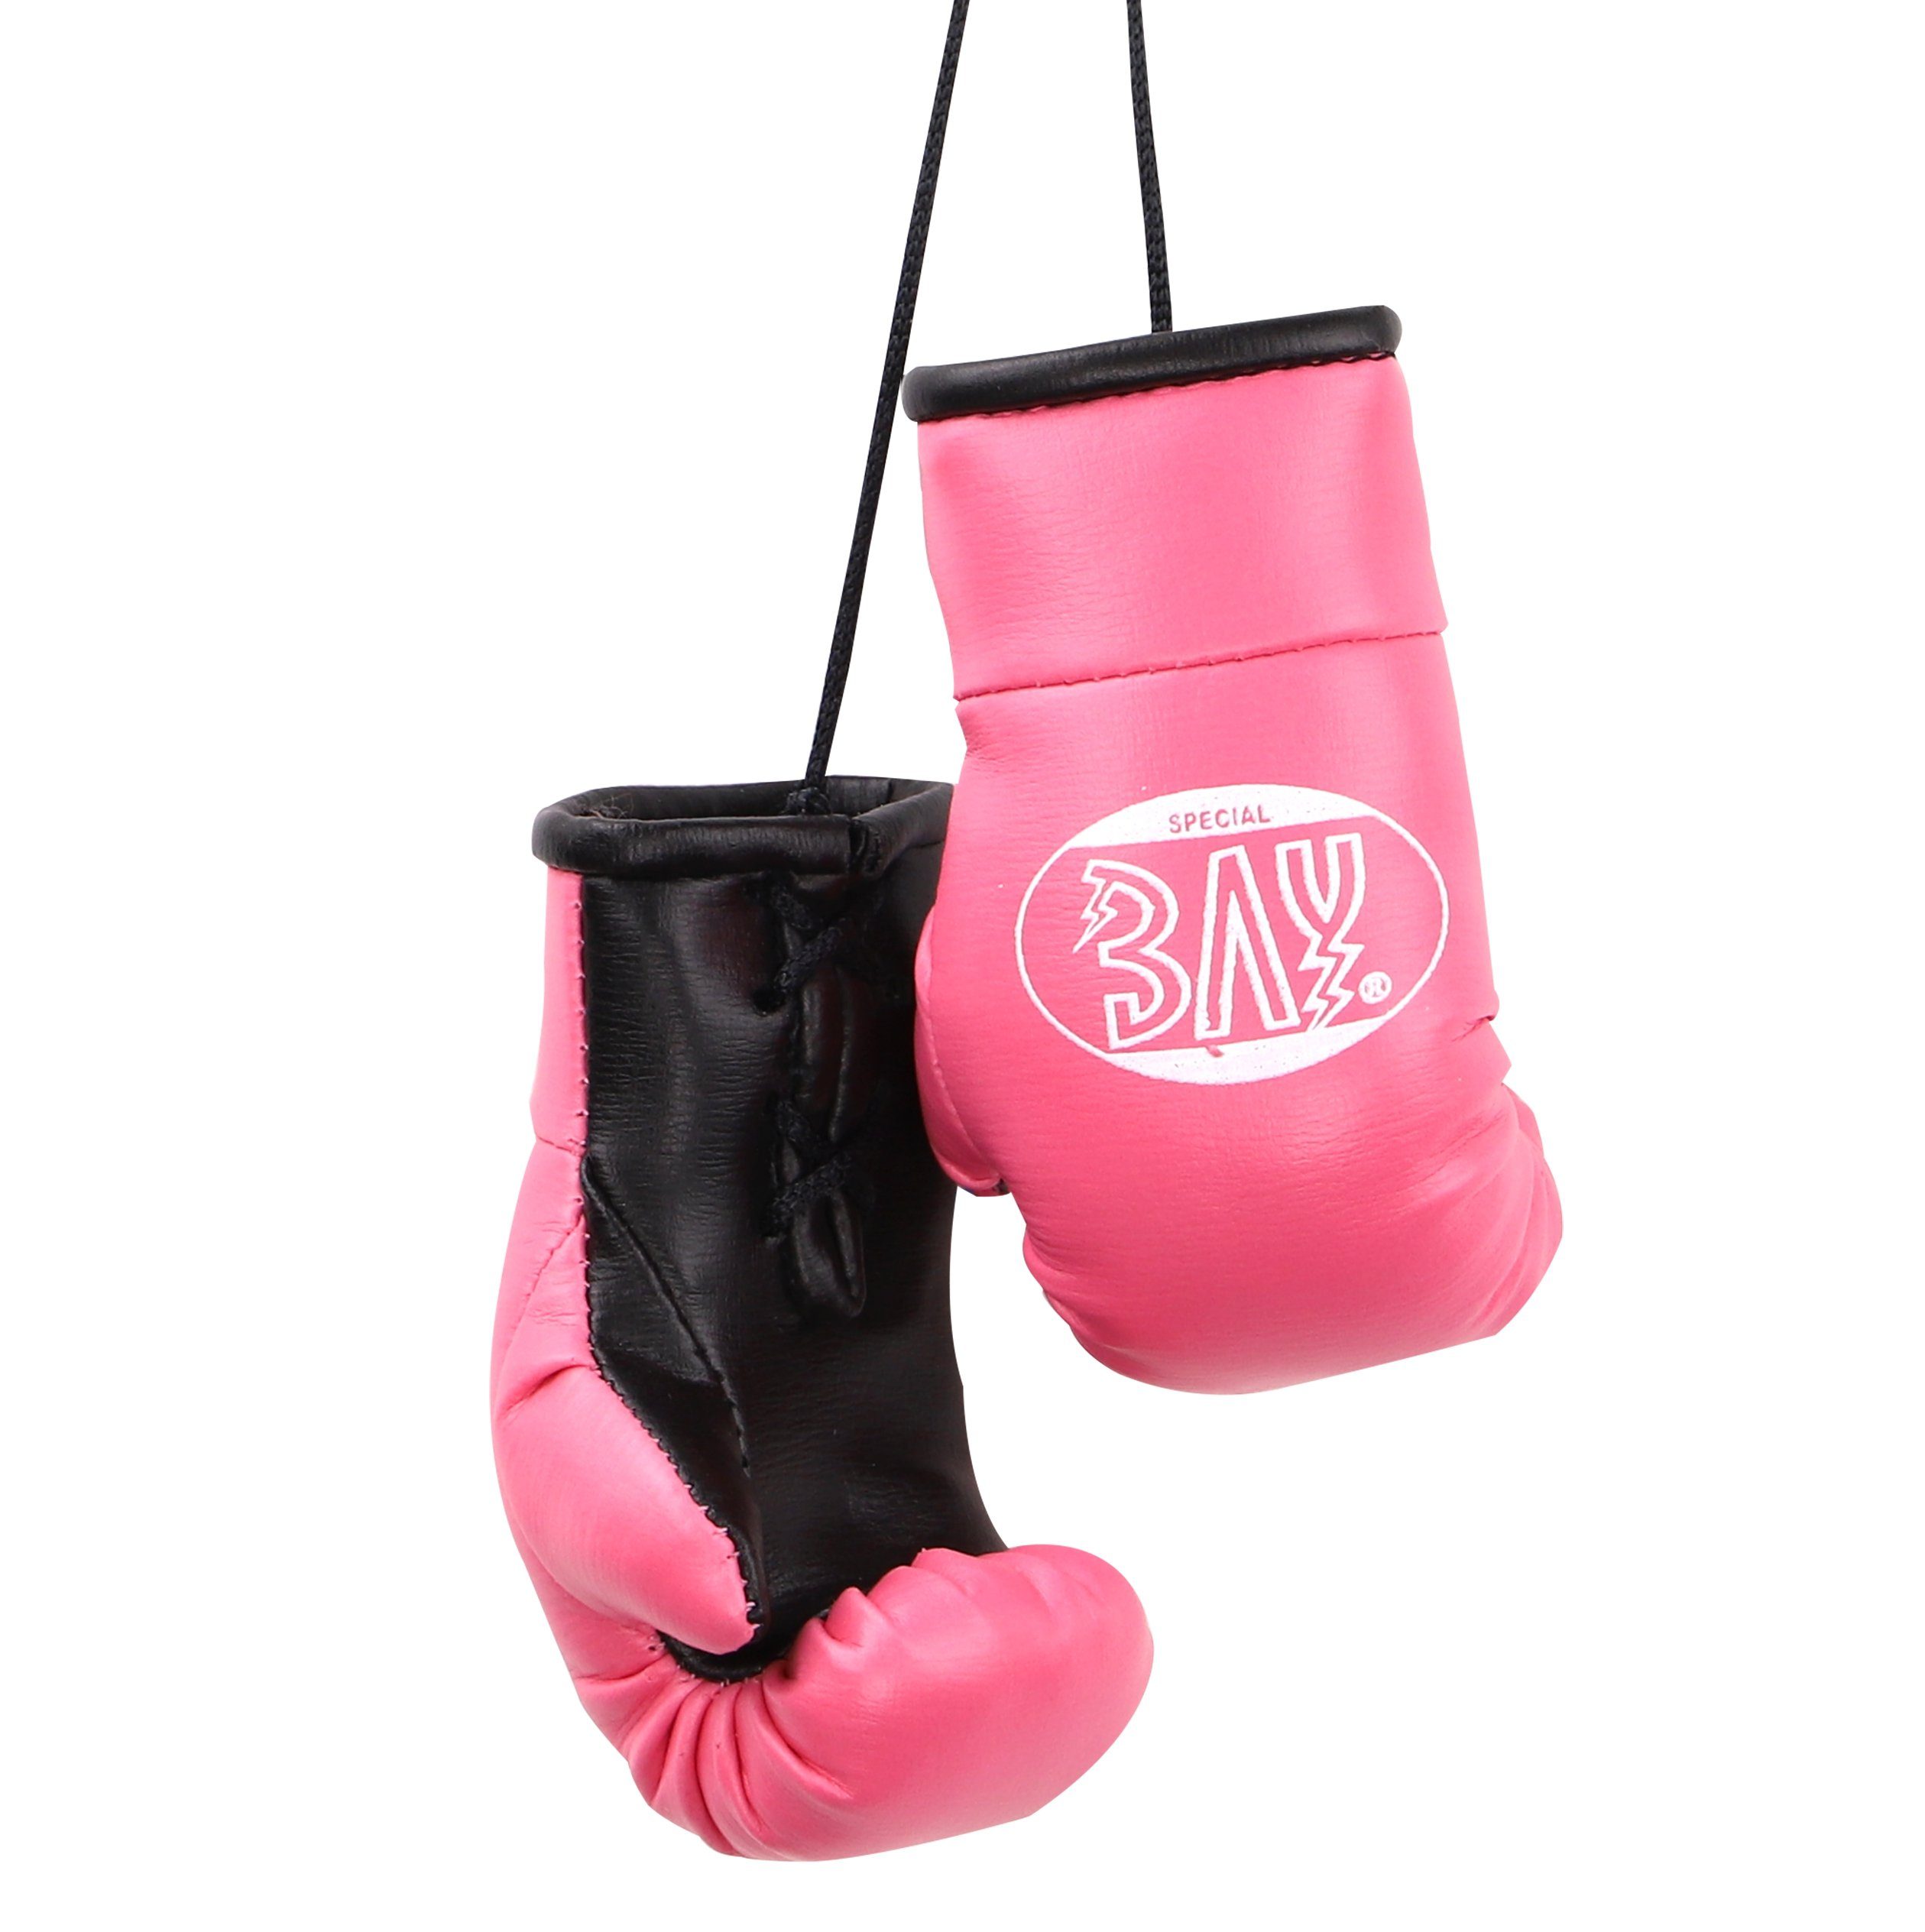 Deko BAY-Sports für Tasche, Anhänger Mini Boxen Boxhandschuhe Paar Box-Handschuhe Auto Autospiegel Geschenk pink, usw.